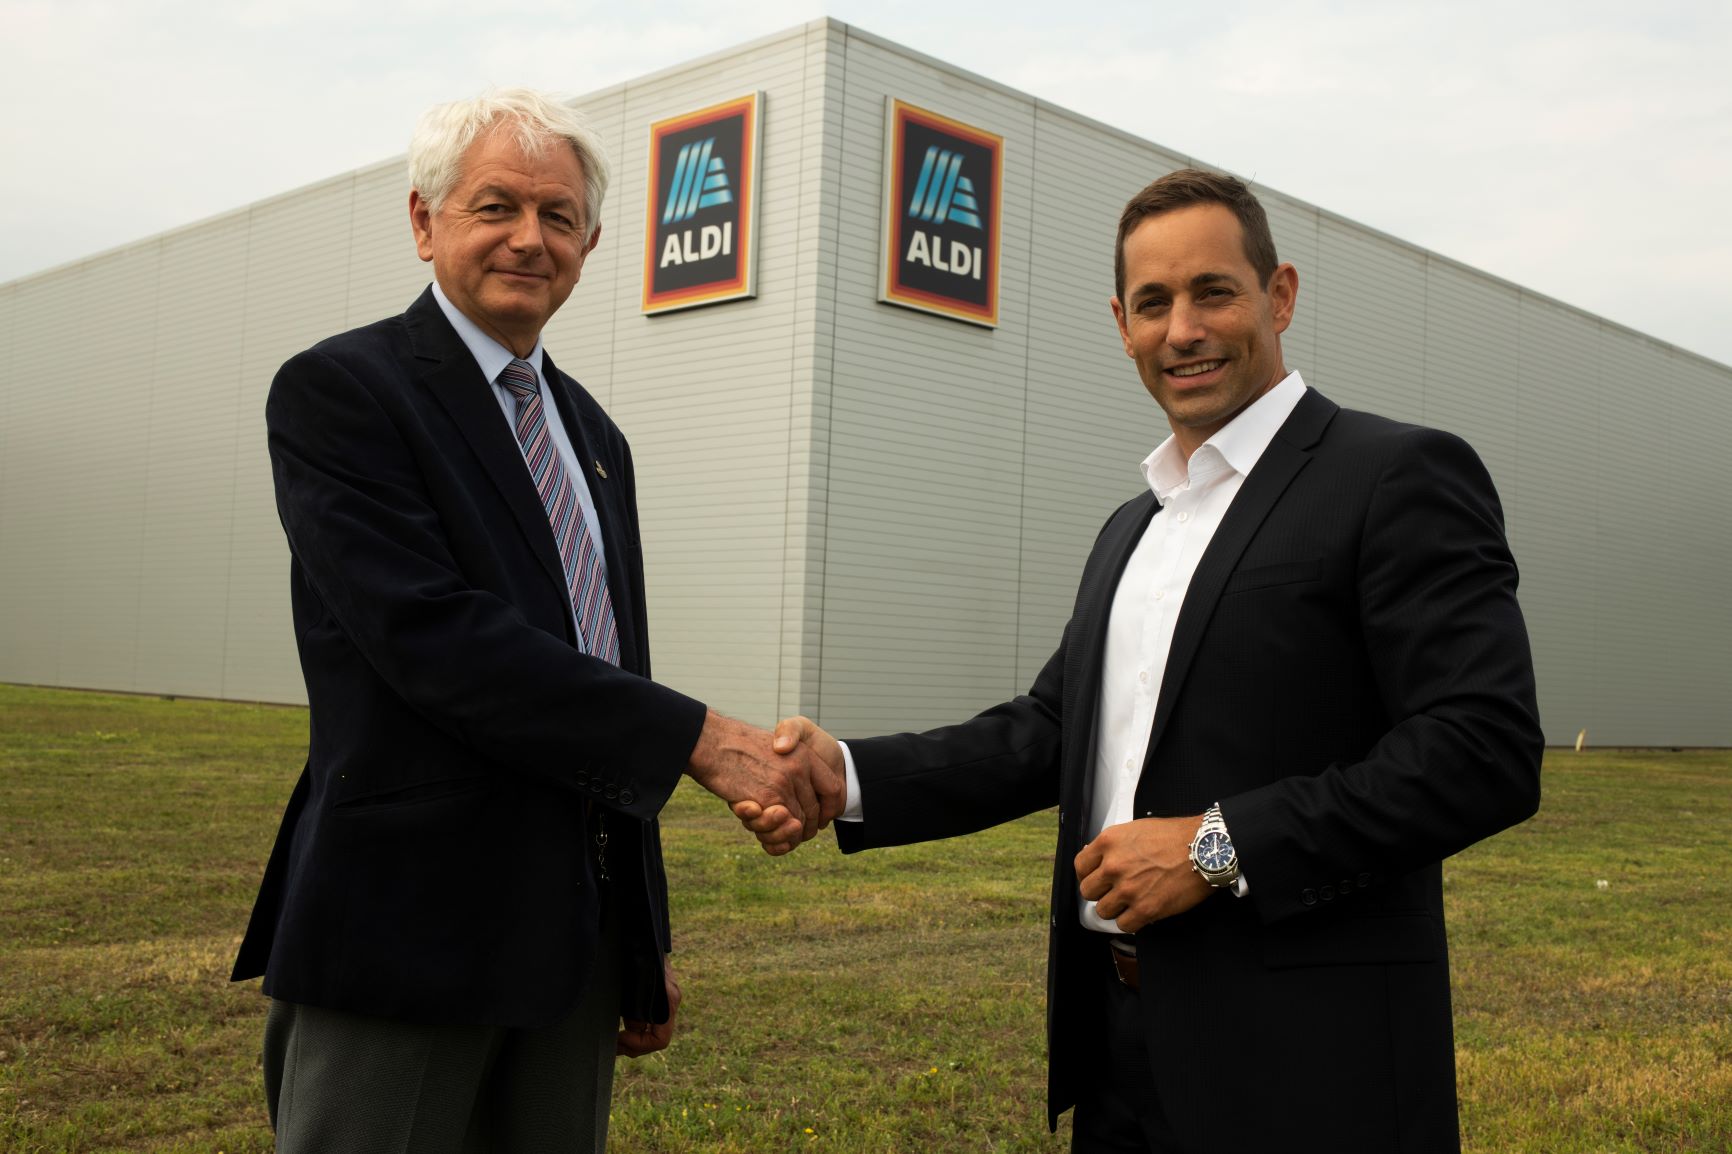 8800 négyzetméteres hűtőraktárat épít, és 50 fővel bővít az ALDI